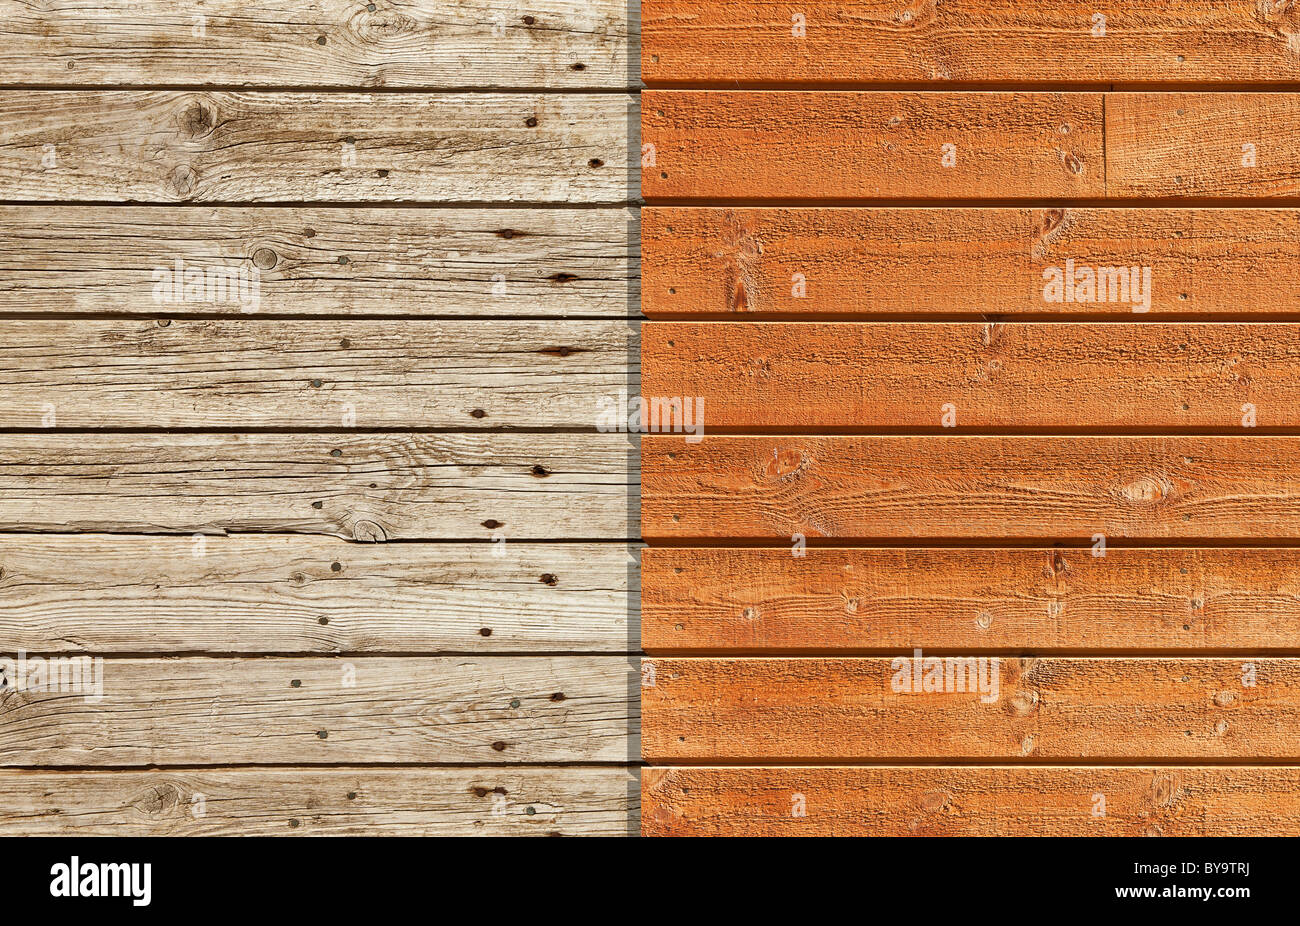 Pared de madera vieja y gastada contra un nuevo muro y barnizadas Foto de stock